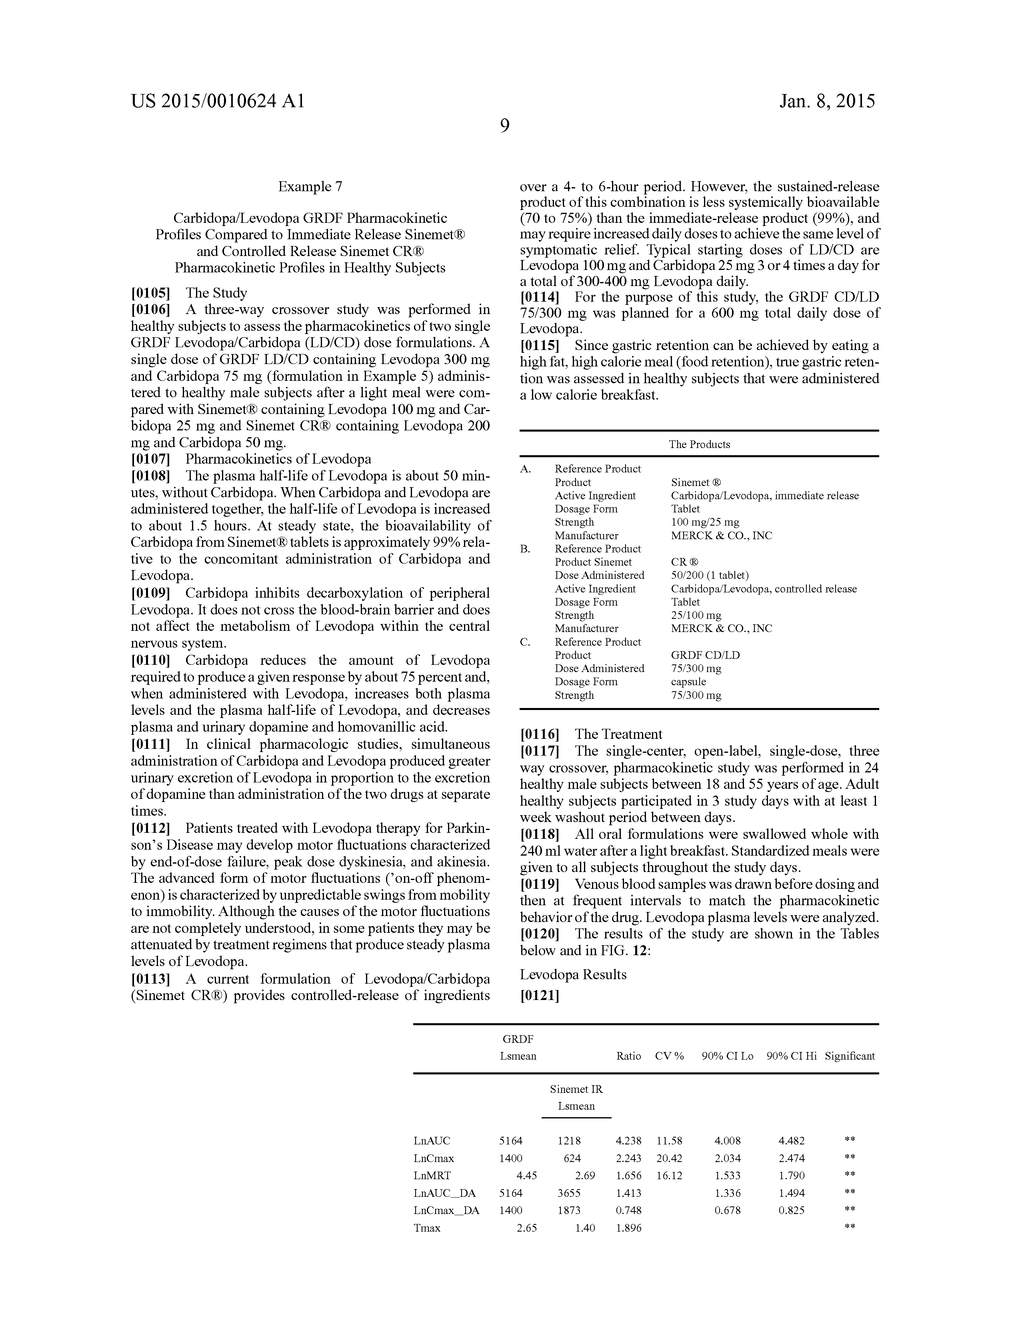 CARBIDOPA/LIPODOPA GASTRORETENTIVE DRUG DELIVERY - diagram, schematic, and image 23